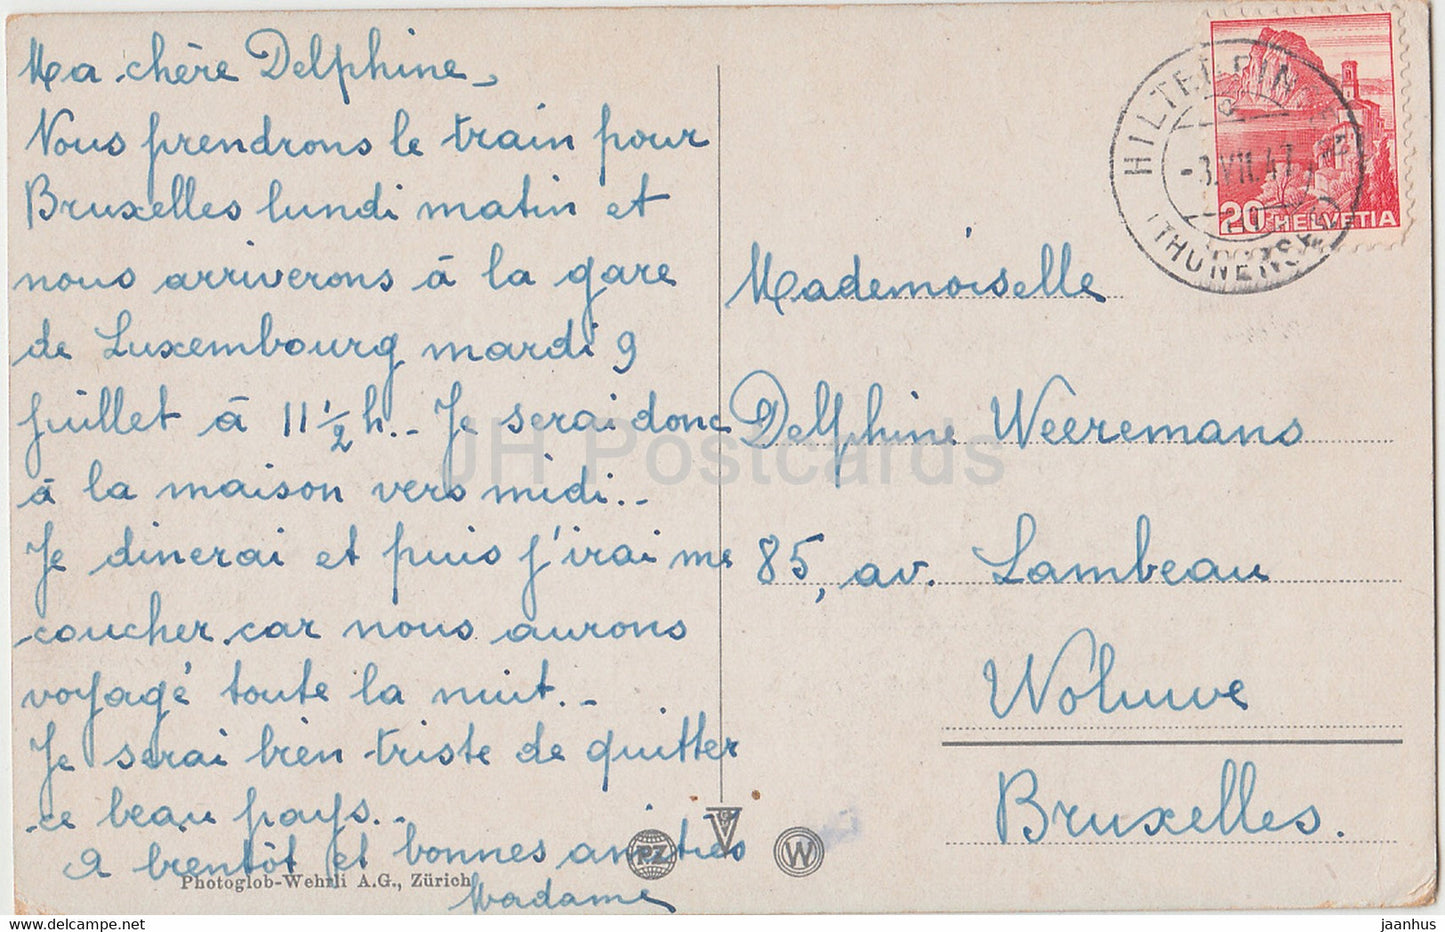 Interlaken mit Jungfrau 4166 m - 4764 - carte postale ancienne - 1947 - Suisse - utilisé